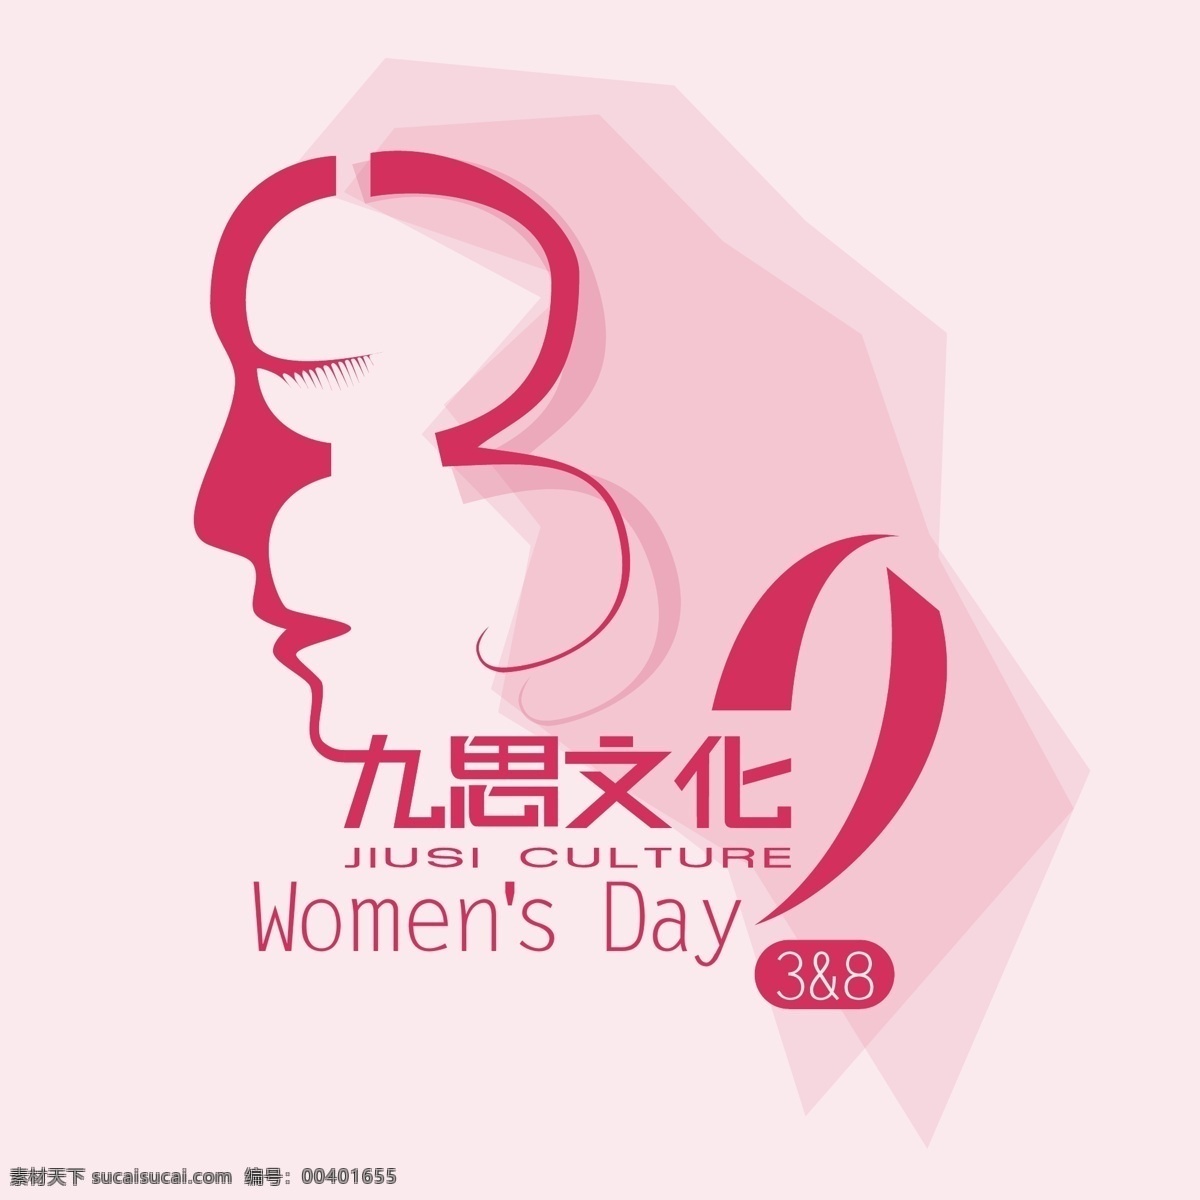 妇女节素材 随意 换 logo 3 三月八日 womens day 节日